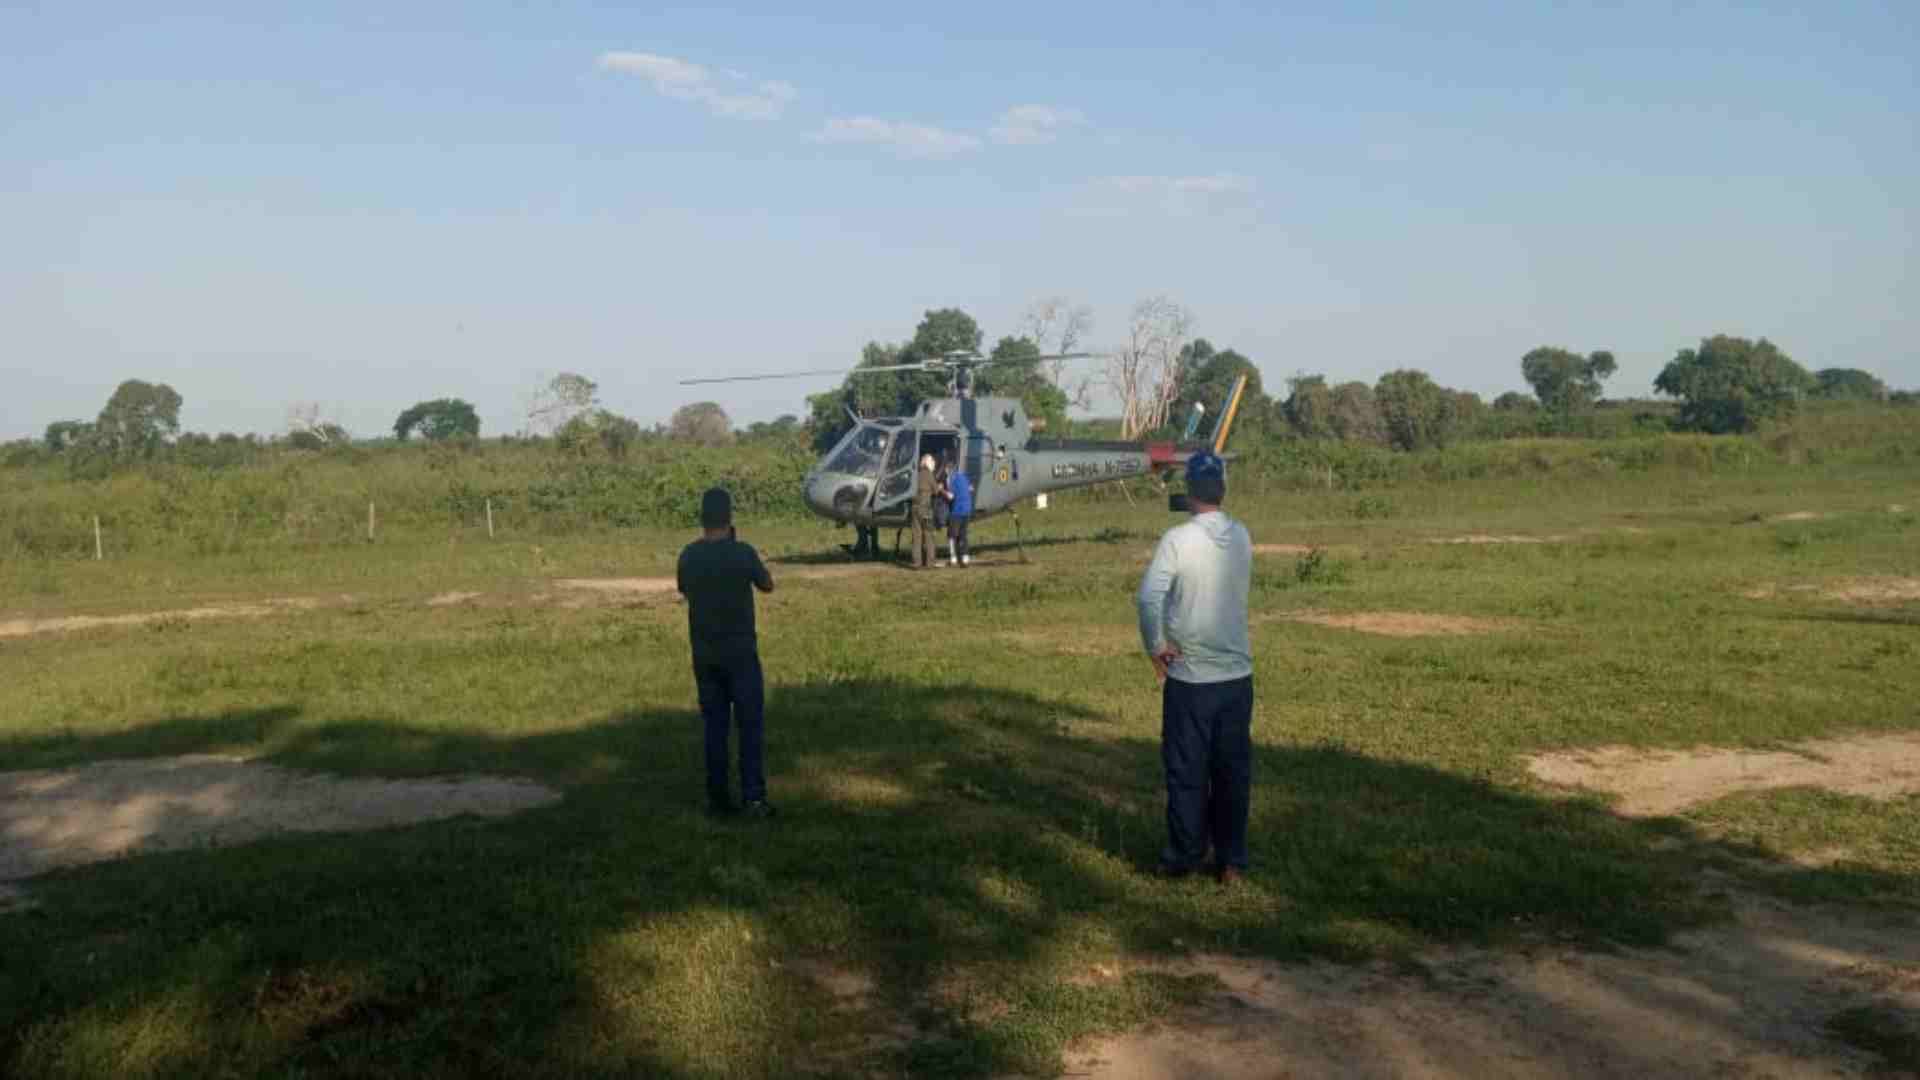 Turista é resgatado de helicóptero no Pantanal após pular em piscina e bater a cabeça